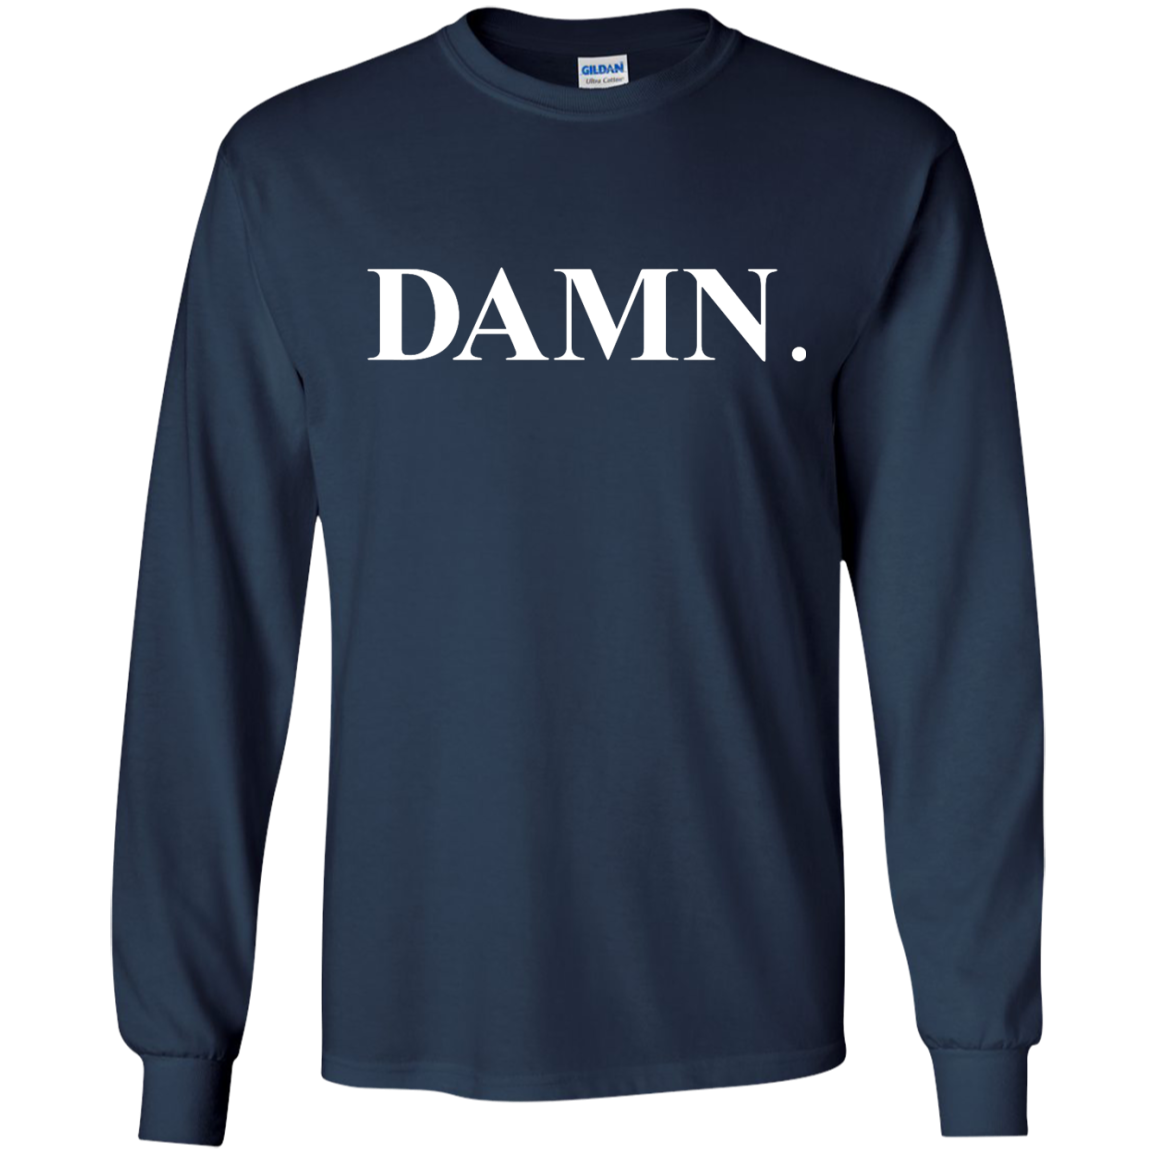 Kendrick Lamar Damn shirt, sweater, tank - iFrogTees